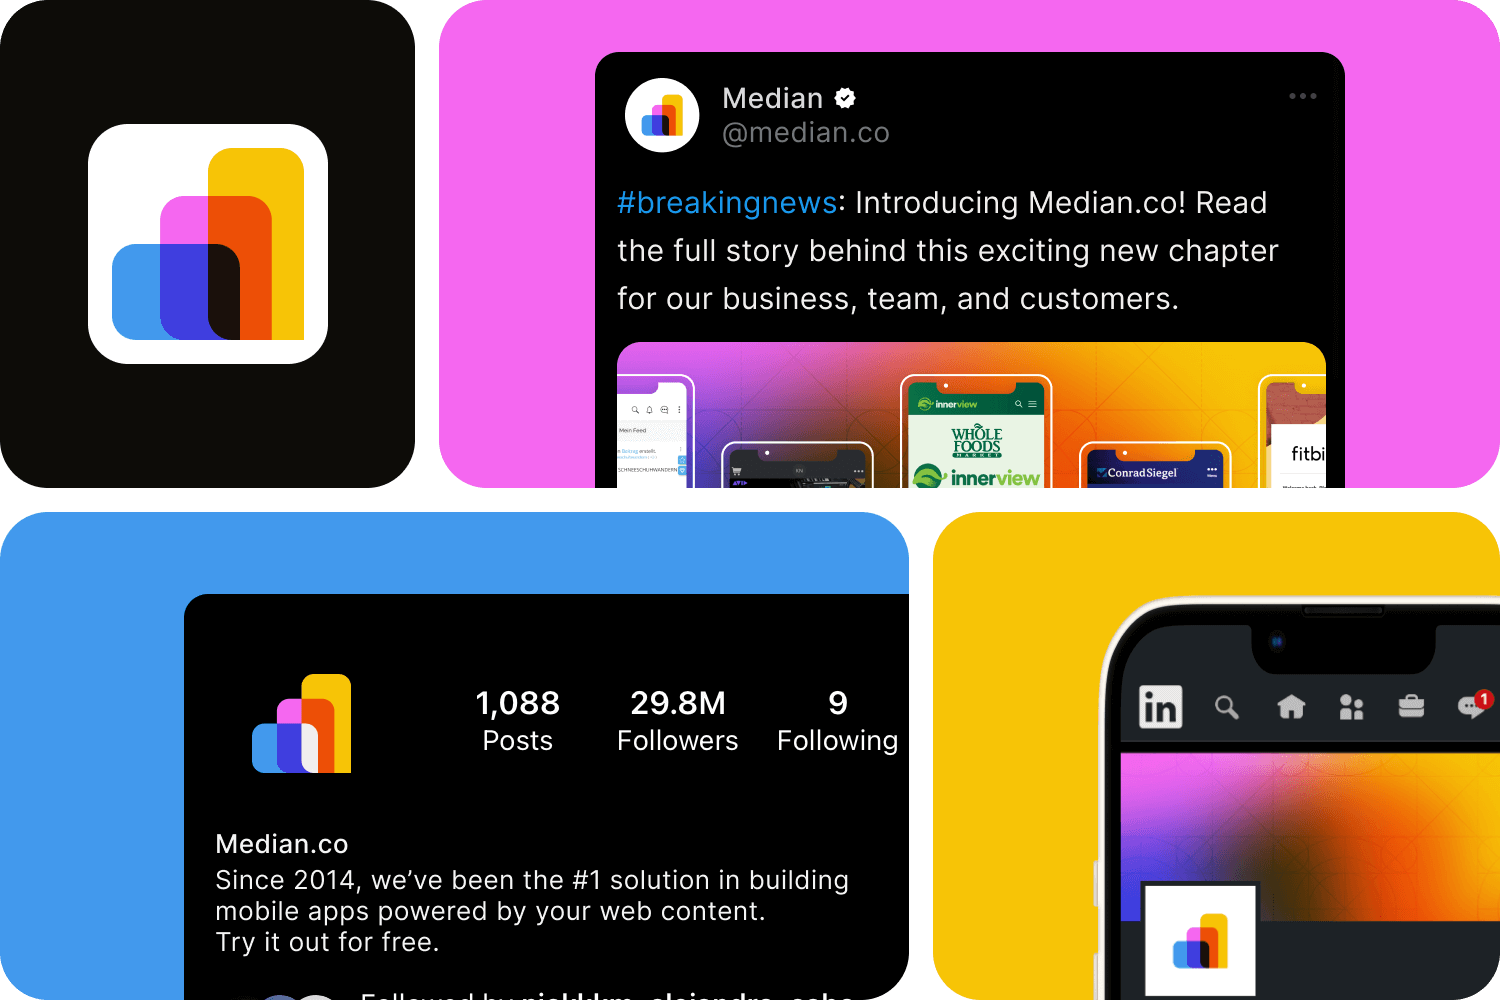 Median.co on LinkedIn, Facebook, Twitter, and Instagram